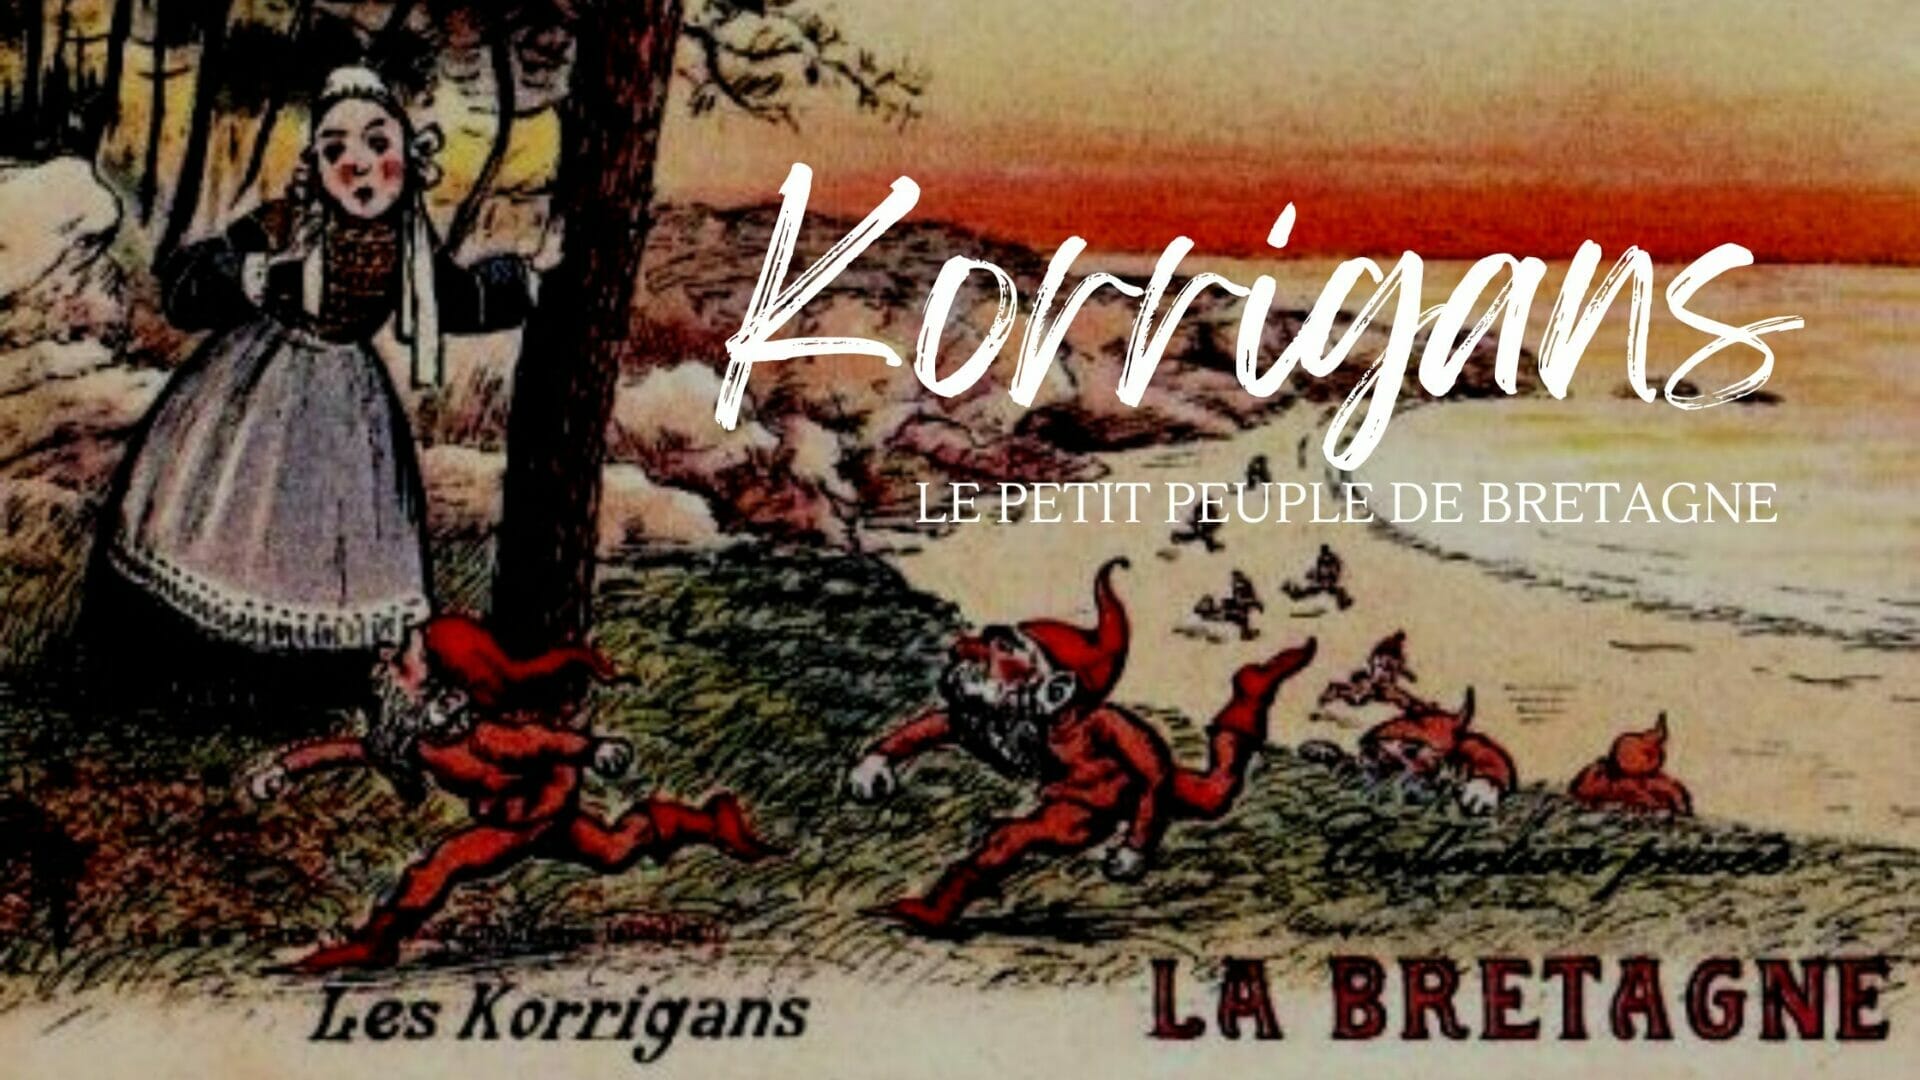 Les korrigans, petit peuple légendaire de Bretagne